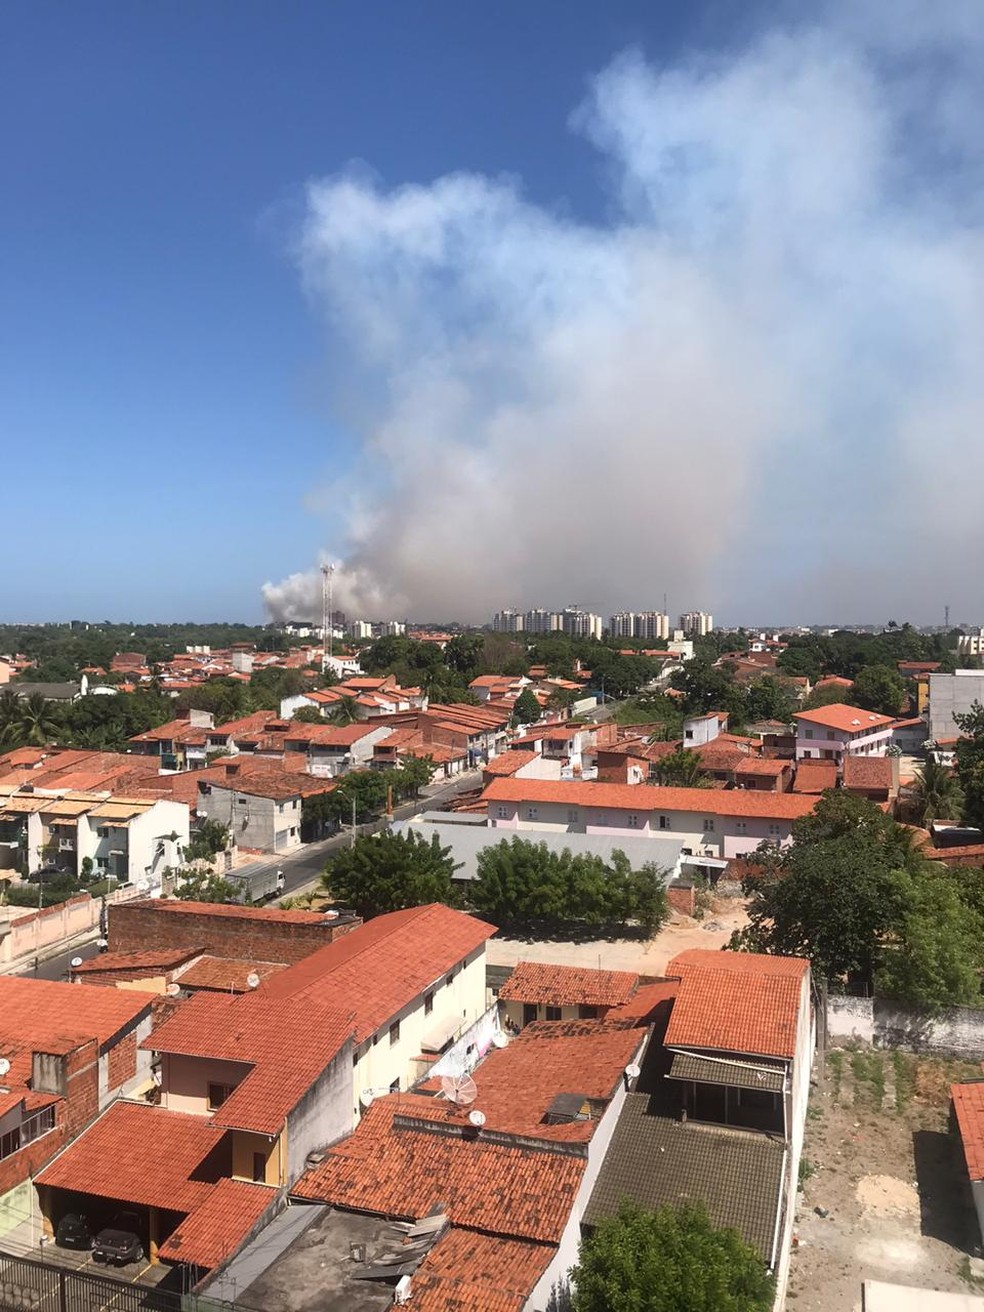 Moradores de bairros vizinhos puderam visualizar a fumaça causada pelo incêndio no Bairro Guajiru. — Foto: Arquivo pessoal